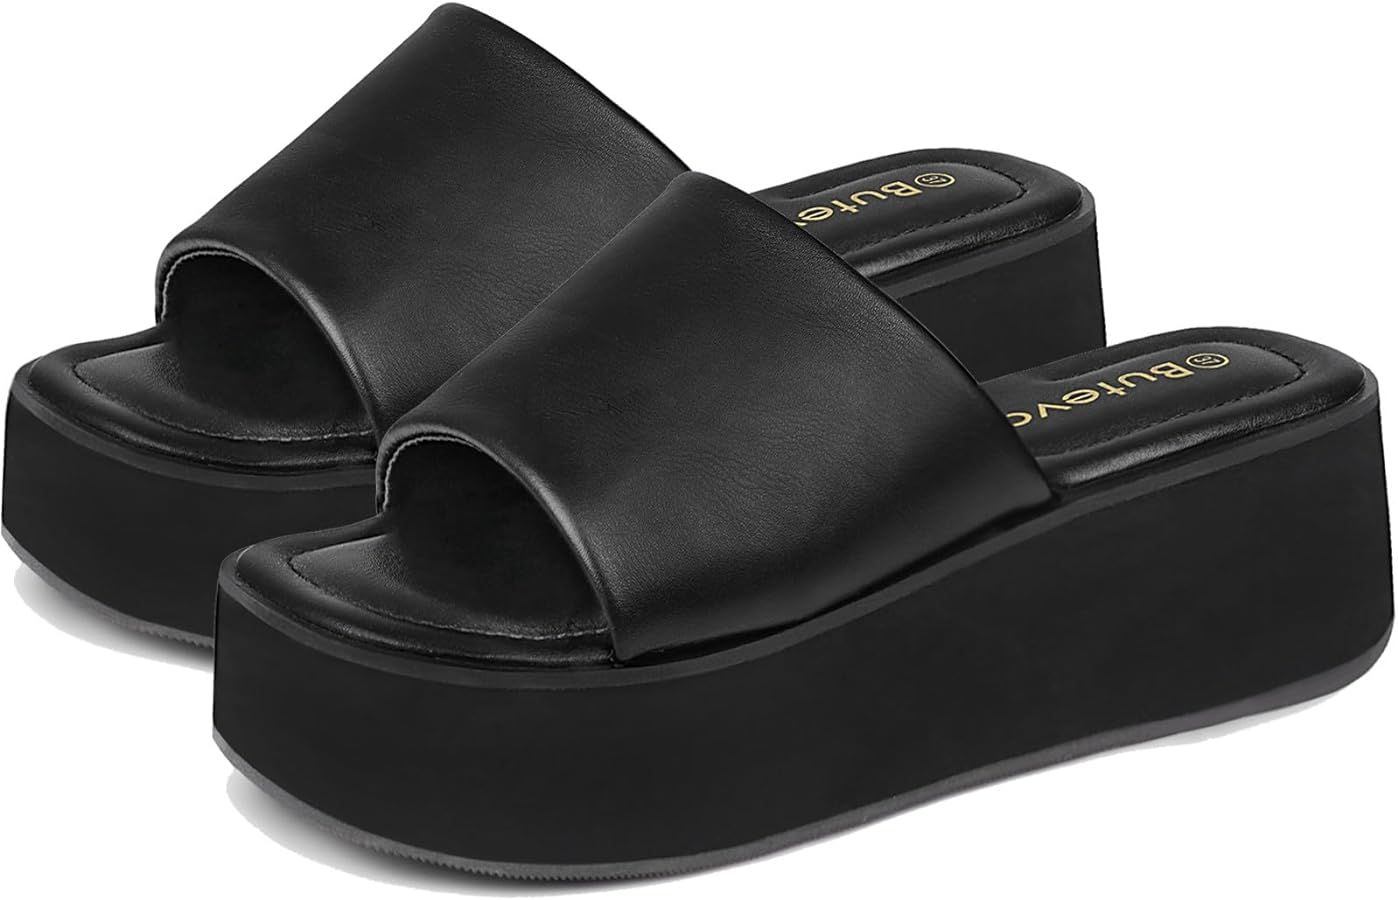 Chunky Platform Sandals for Women - Comfort Black Open Toe Slip on Platform Slides Y2K Wedge Sand... | Amazon (US)